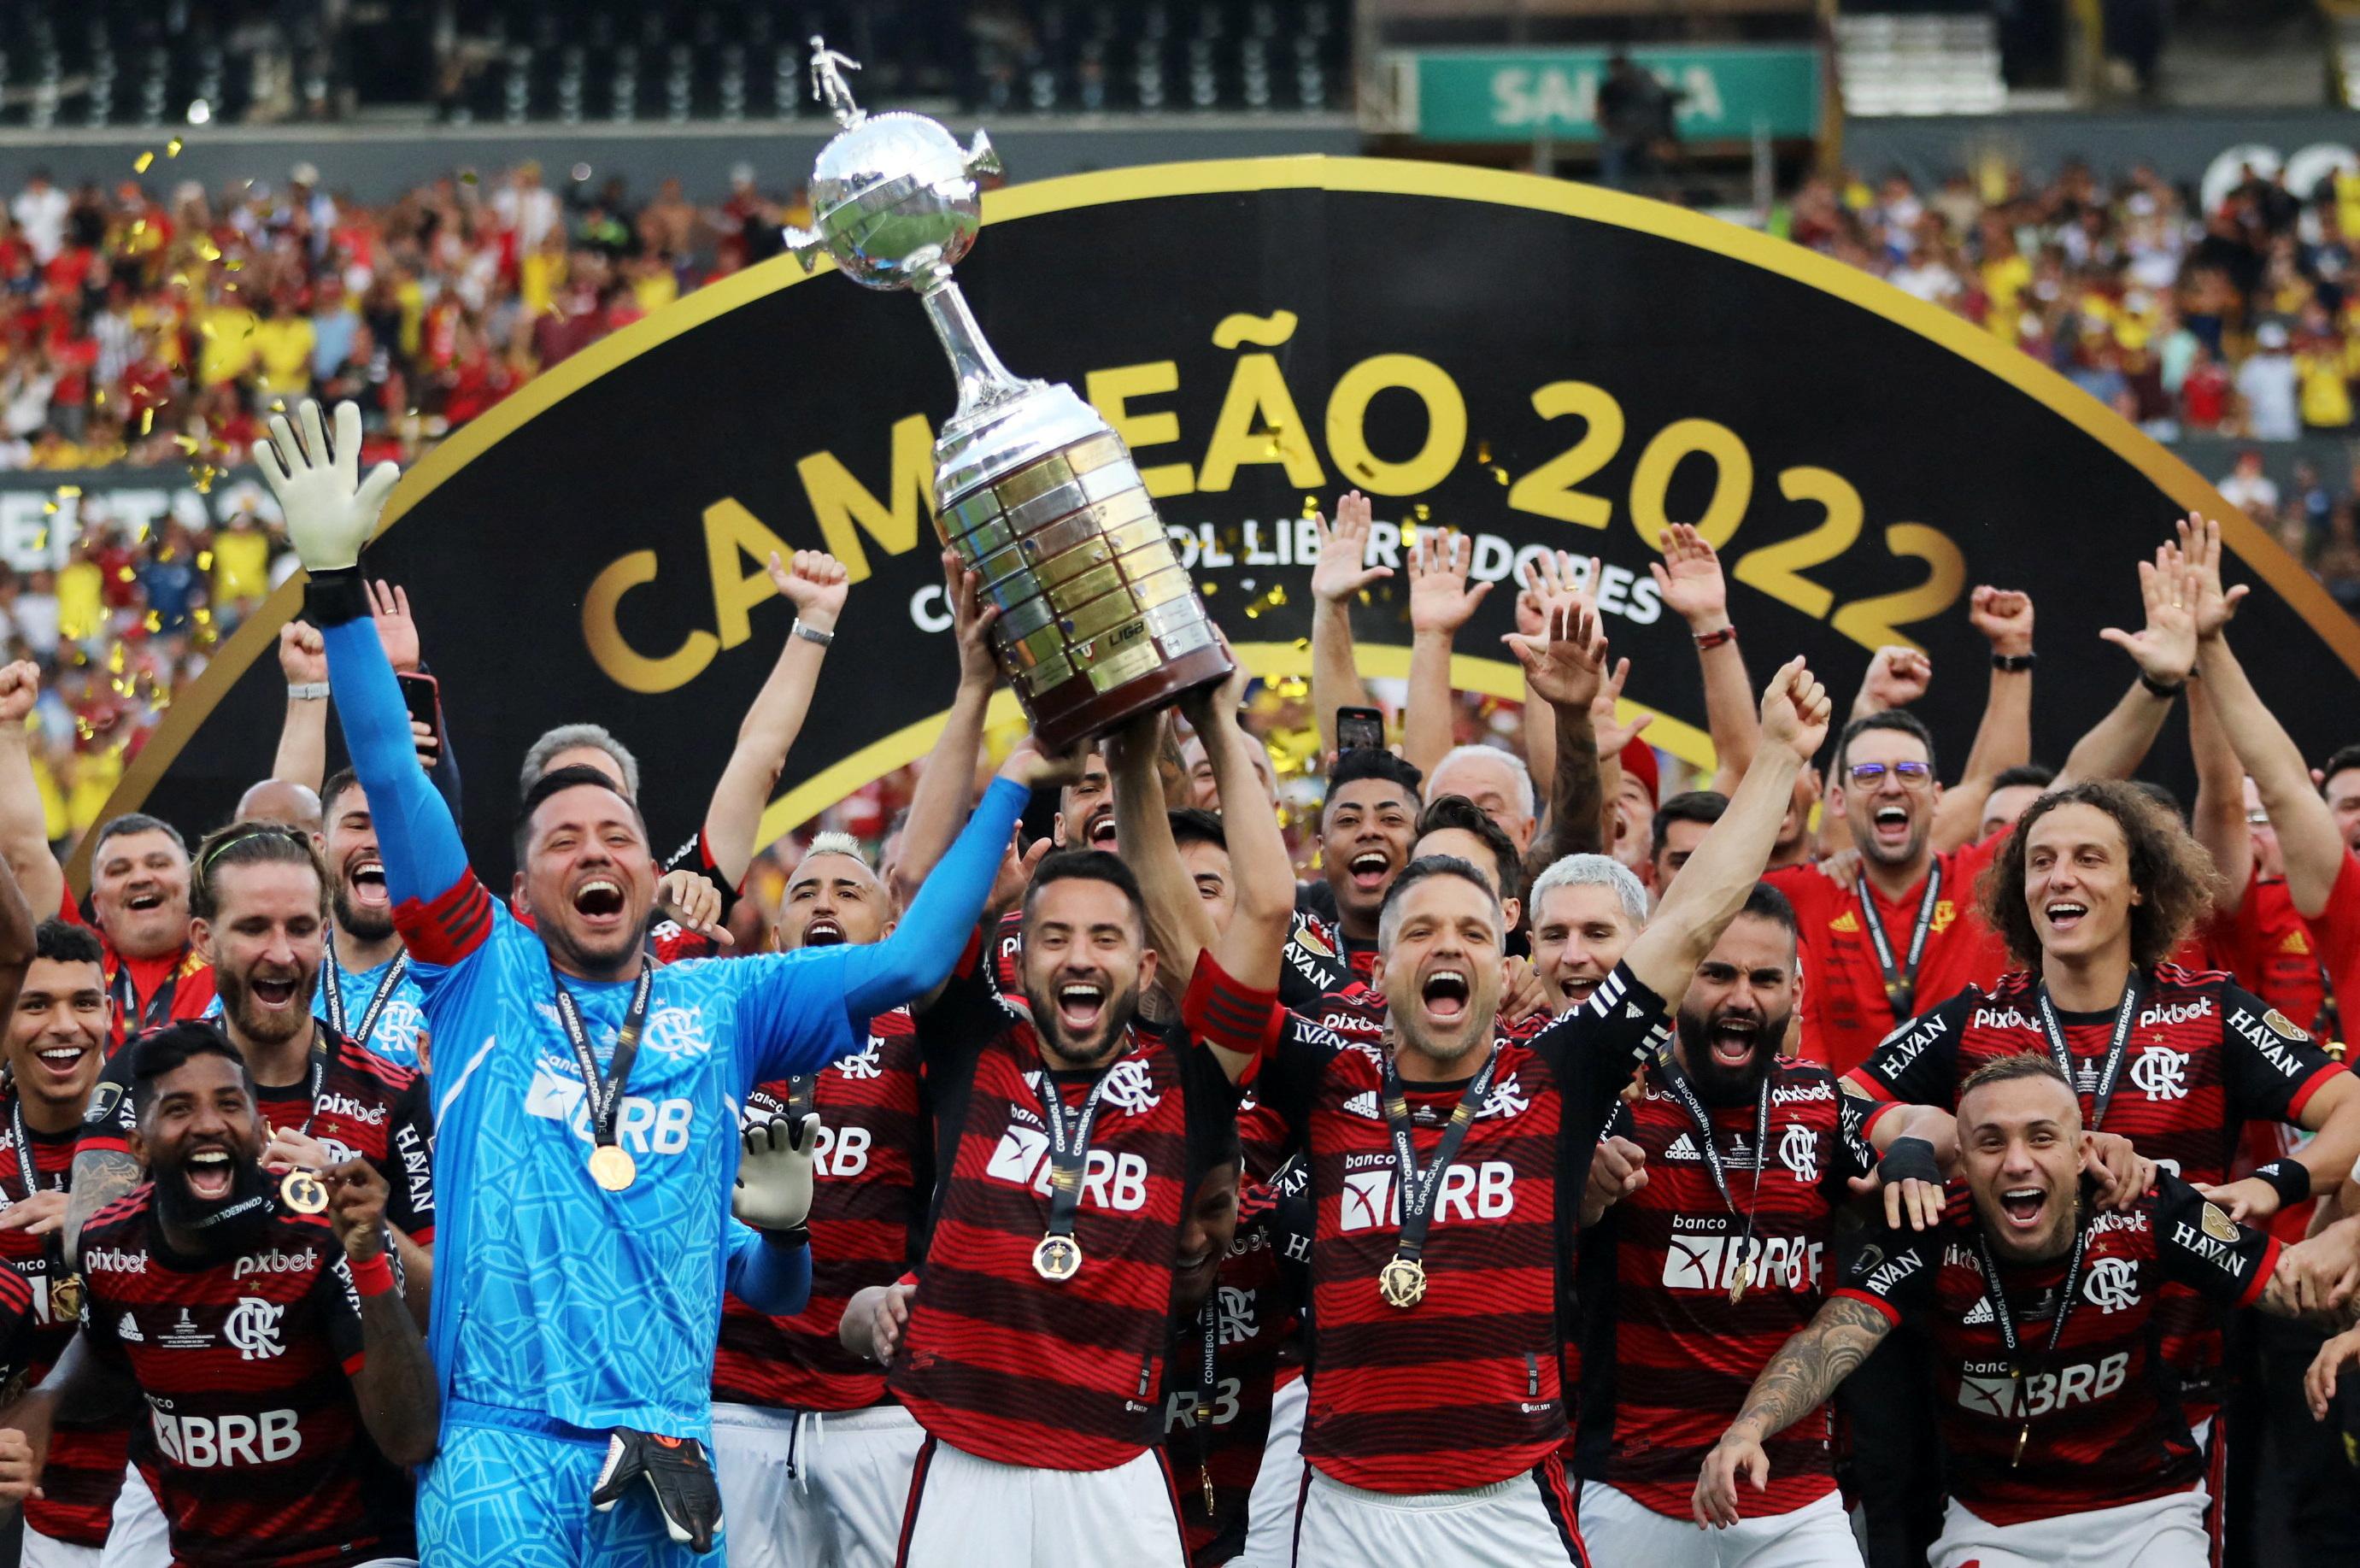 Flamengo com folga na liderança, Palmeiras em 2° e Corinthians fora do top  5: CBF divulga ranking de clubes para 2023 - ESPN